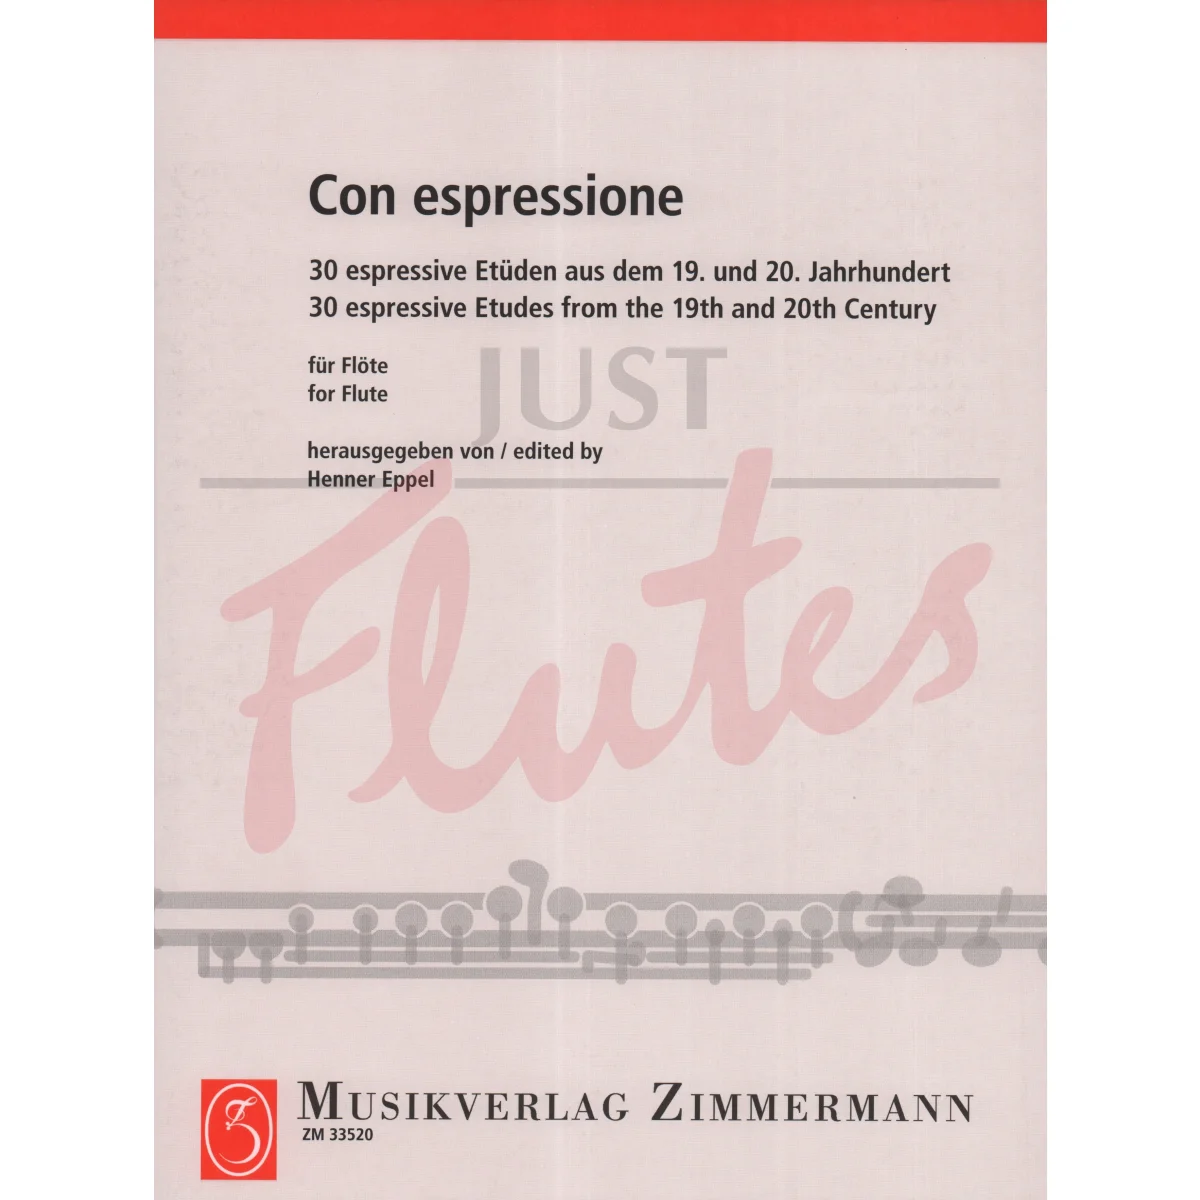 Con Espressione: 30 Espressive Etudes from the 19th and 20th Century for Flute